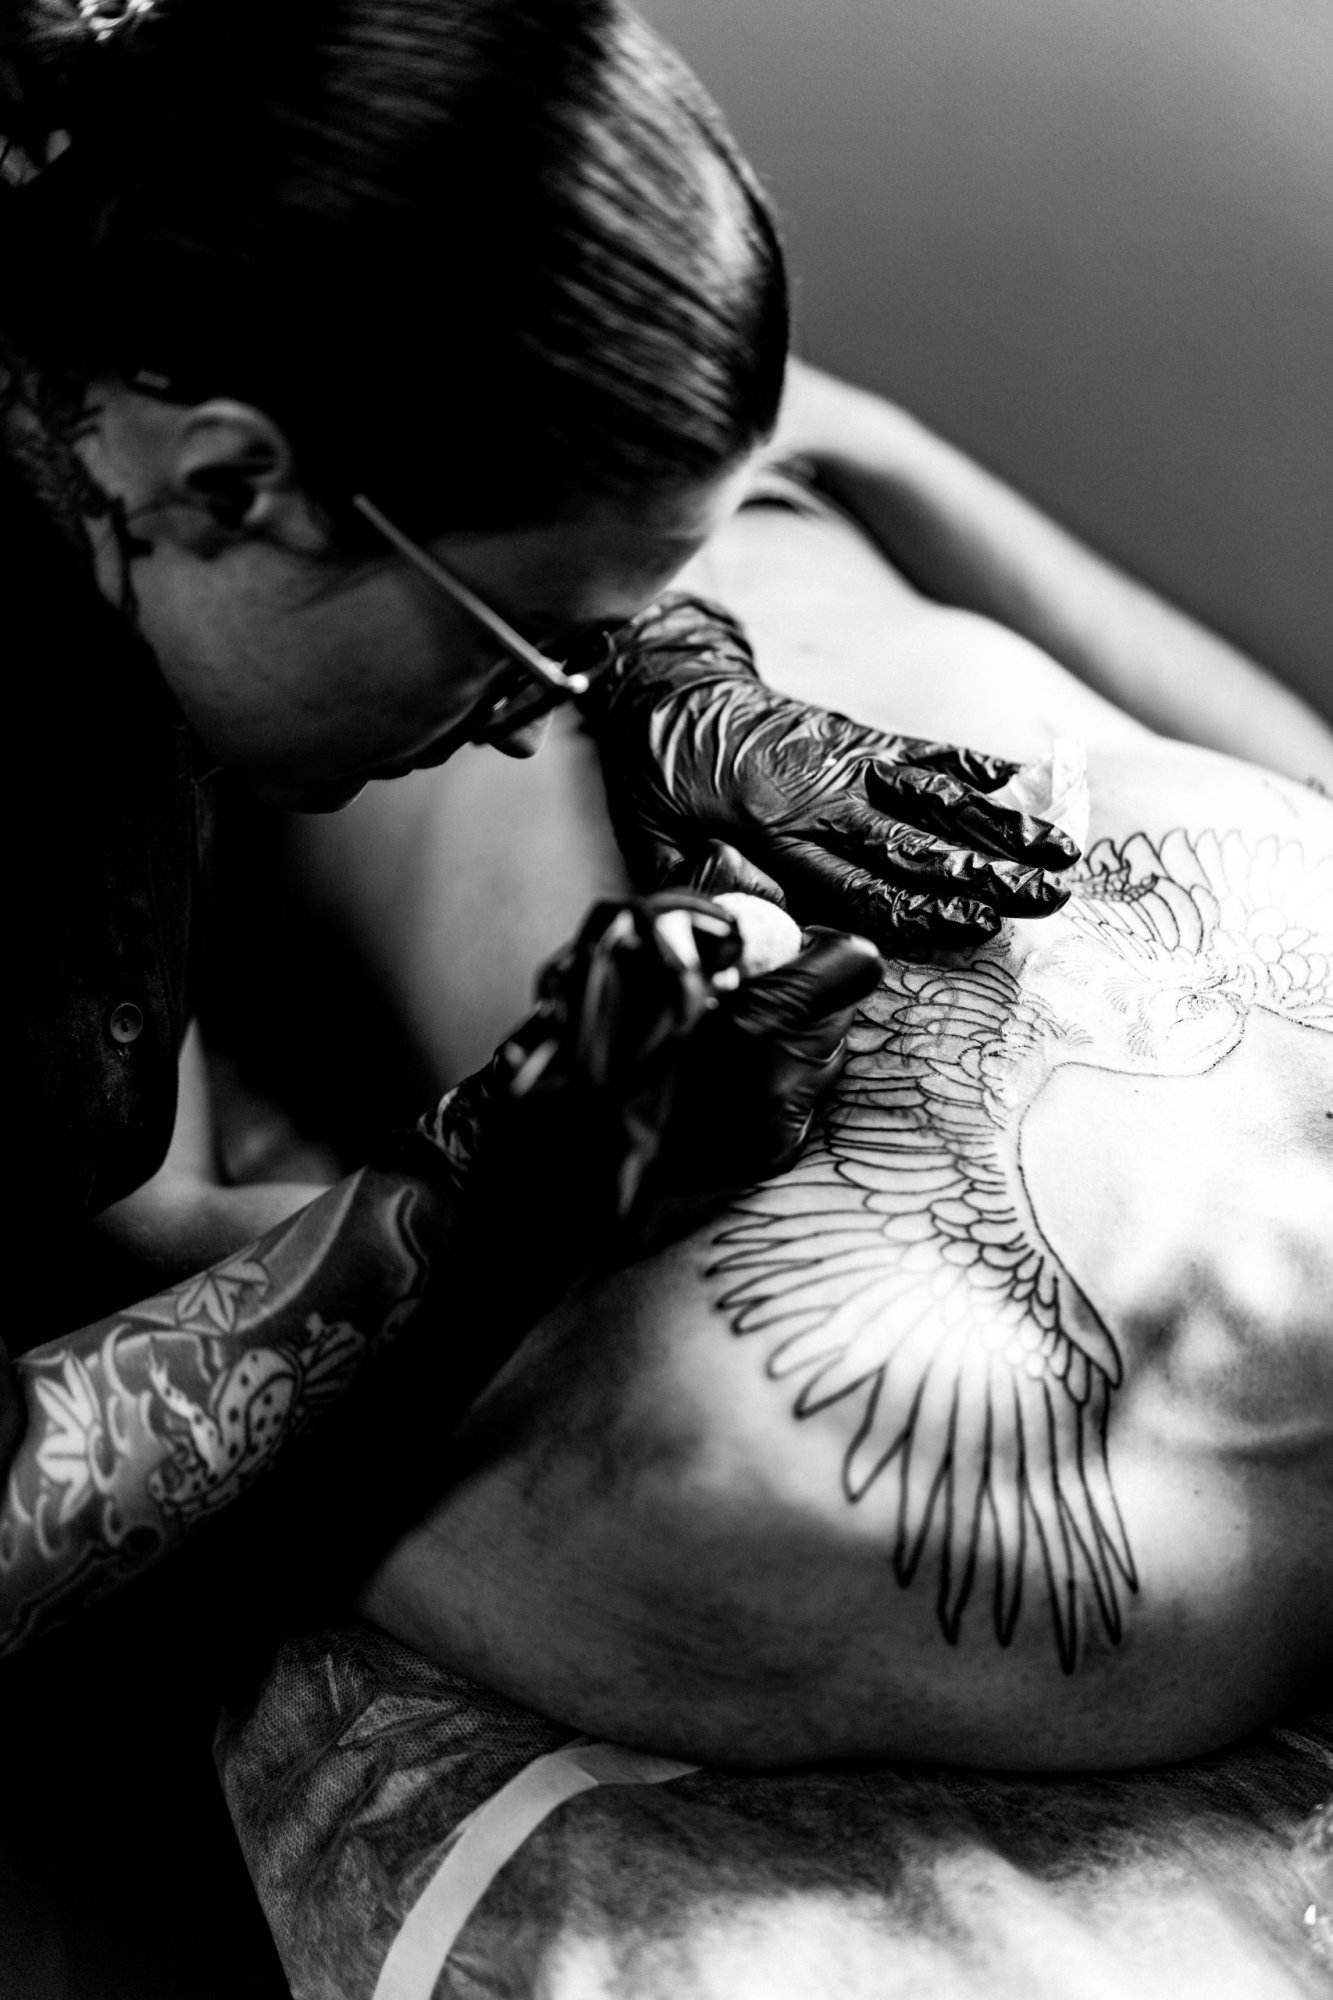 tattoo salon process tattoo girl stuffed tattoo process stuffing tattoo body hands close up scaled